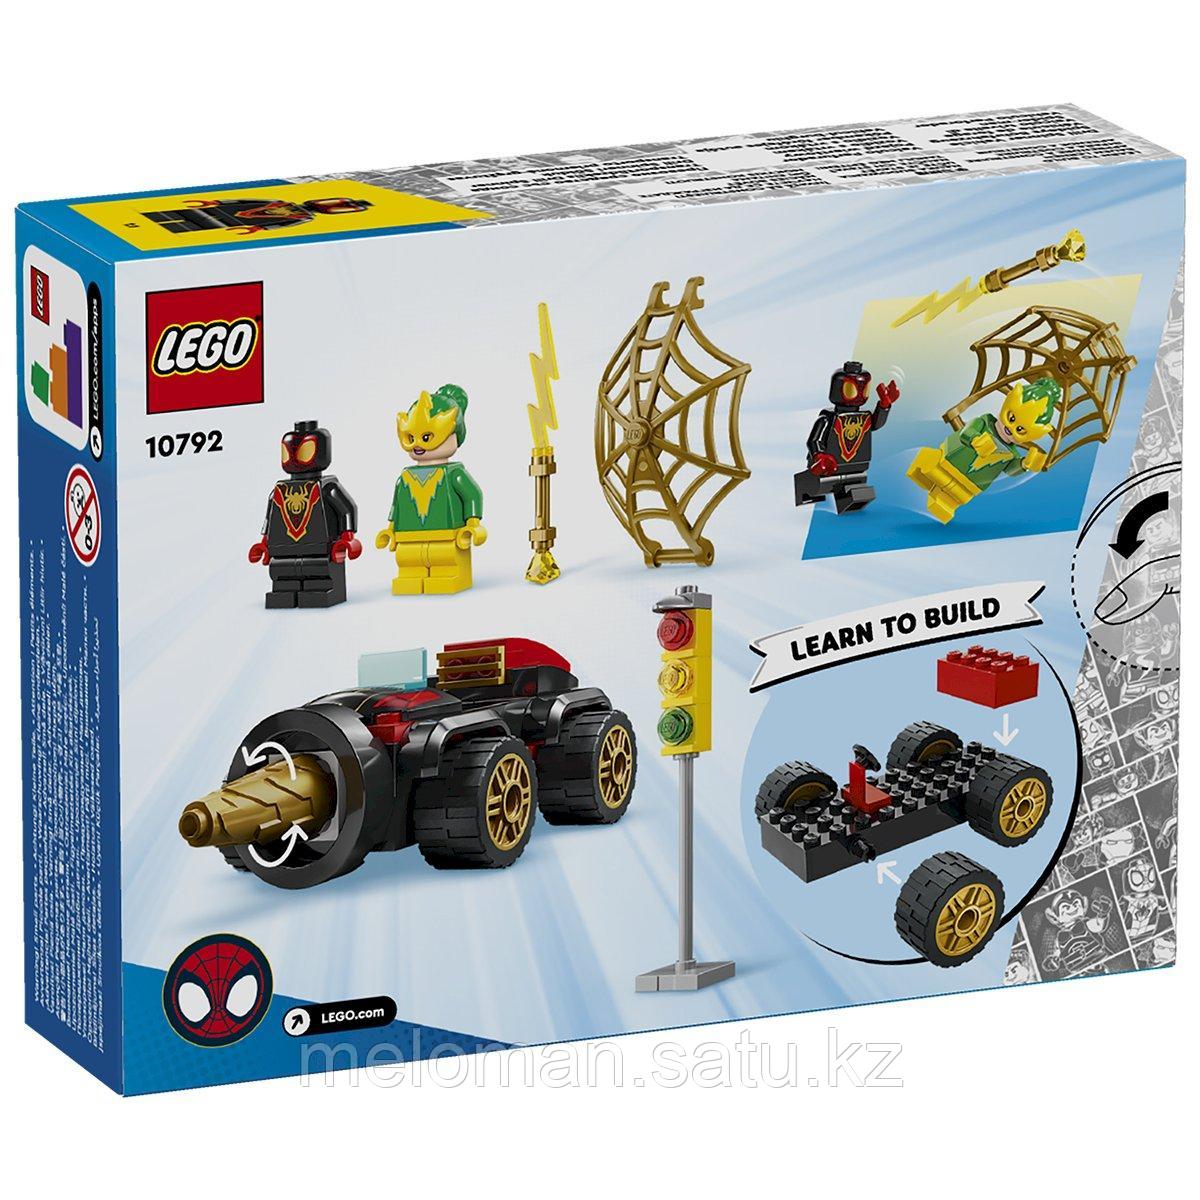 LEGO: Автомобиль-отбойный молоток Marvel 10792